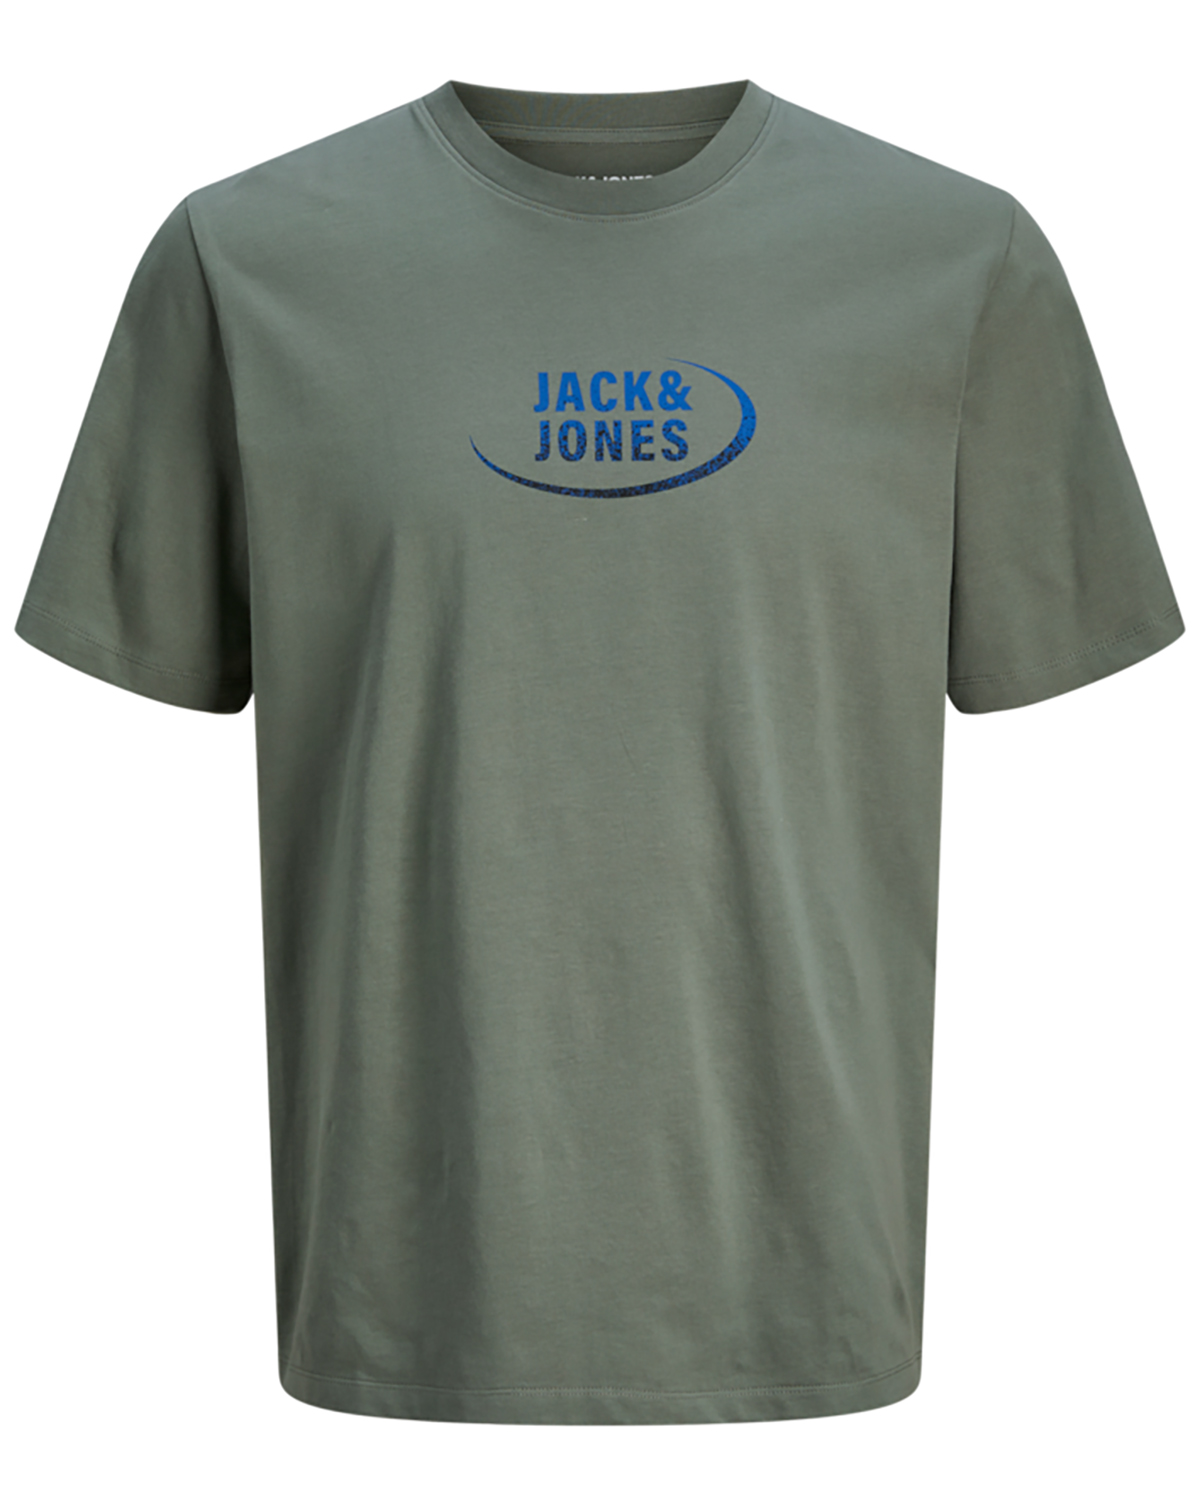 Billede af Jack & Jones t-shirt s/s, Gradient tee, army - 176,S+,S